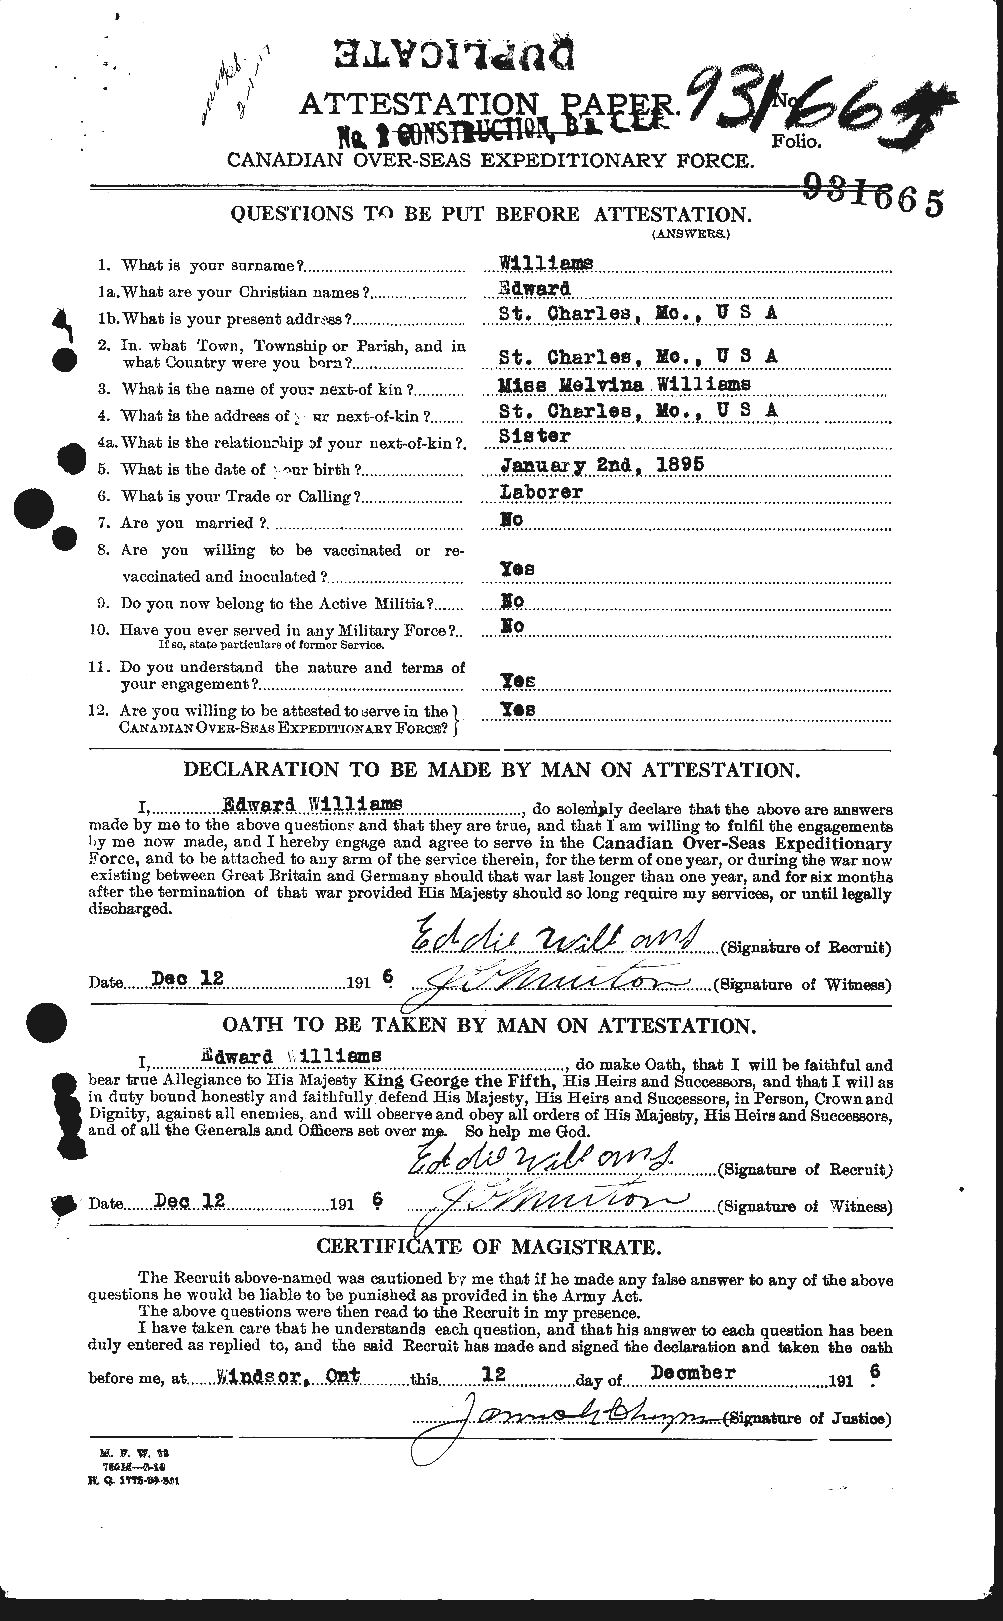 Dossiers du Personnel de la Première Guerre mondiale - CEC 674536a